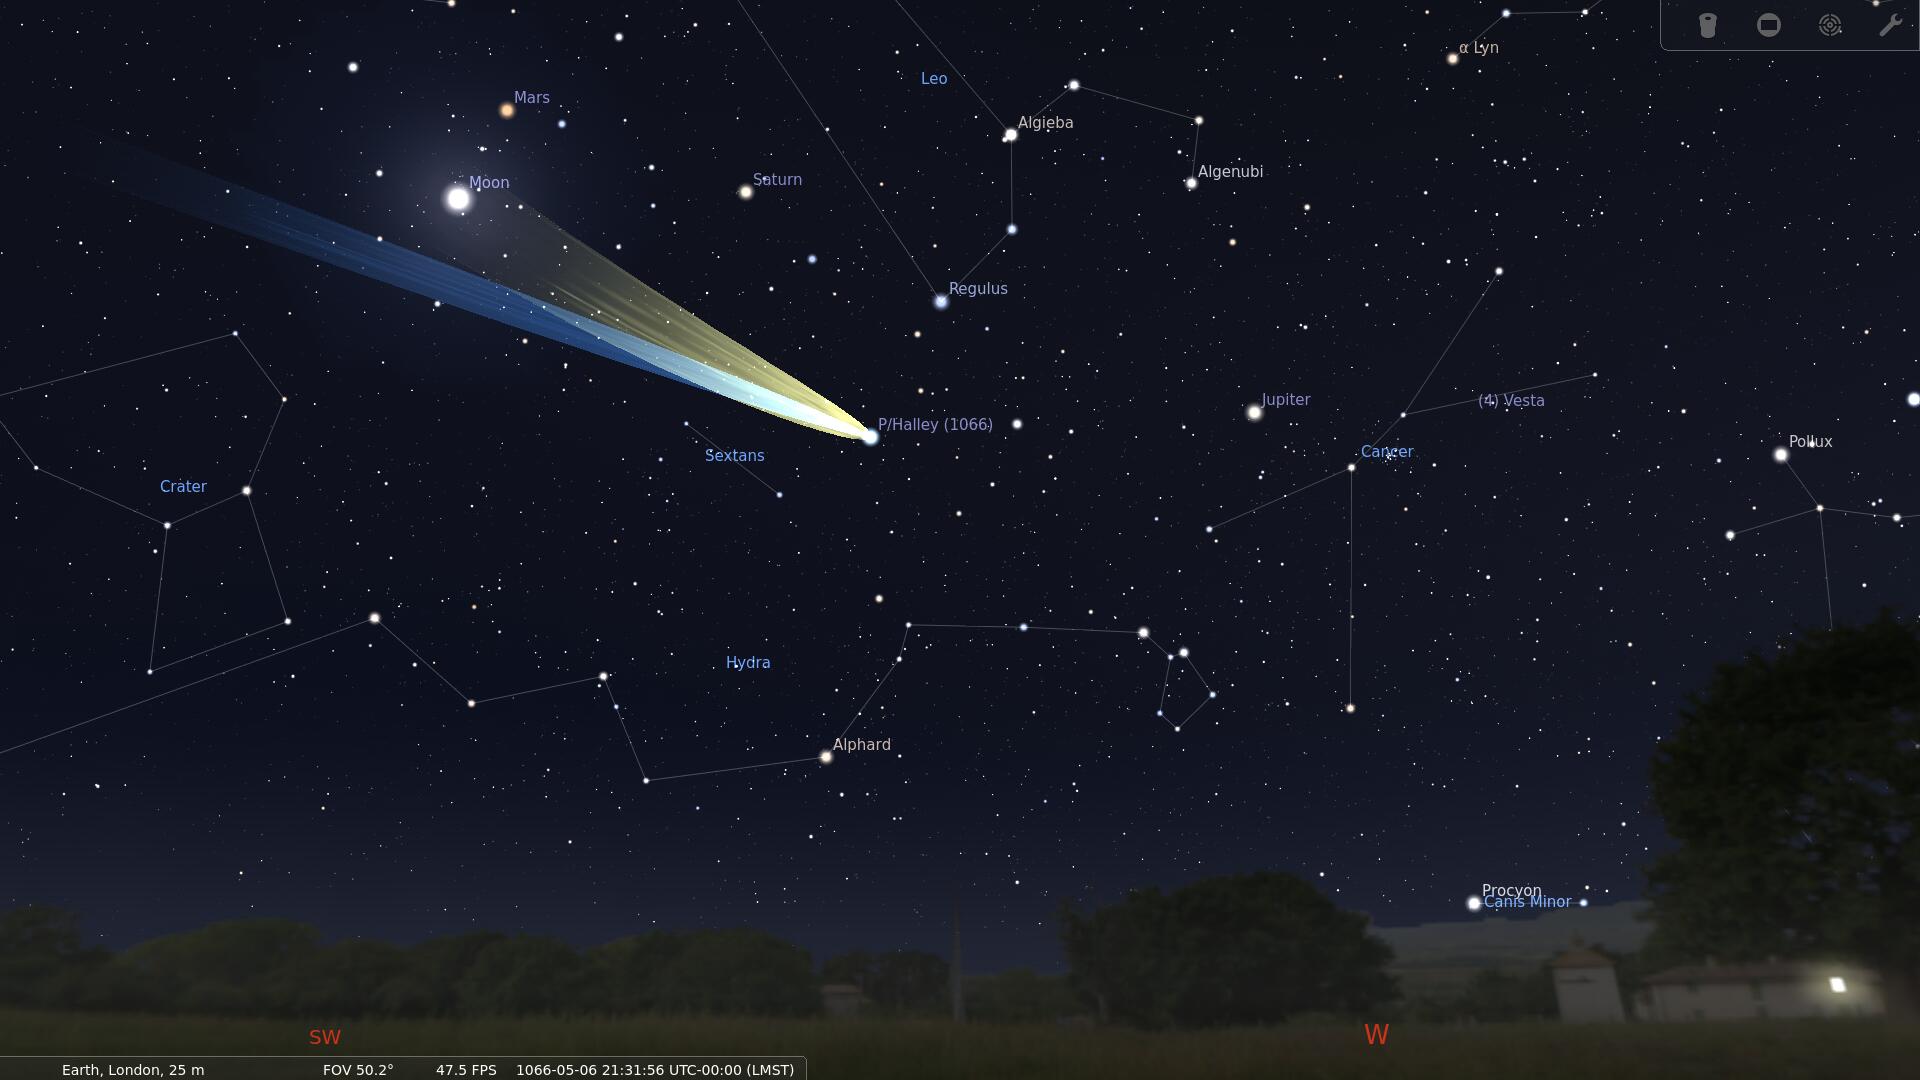 Андромеда, зеленая комета и затмение Антареса: что и как наблюдать на небе в сентябре